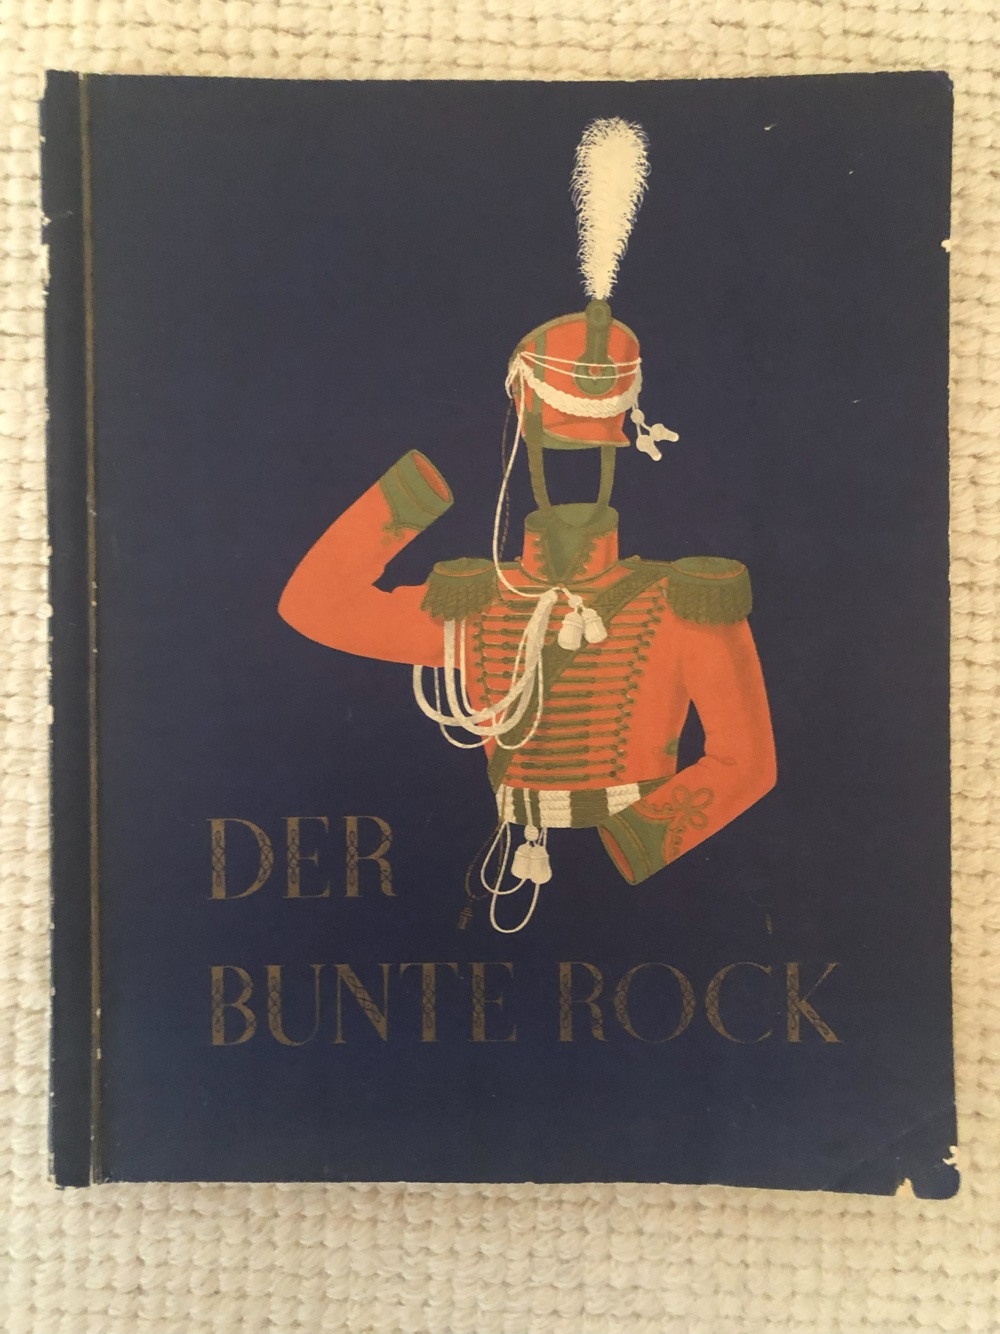 Sammelbildalbum - Der Bunte Rock #Militär #Uniformen #Komplett #Haus Neuerburg 252 Bilder